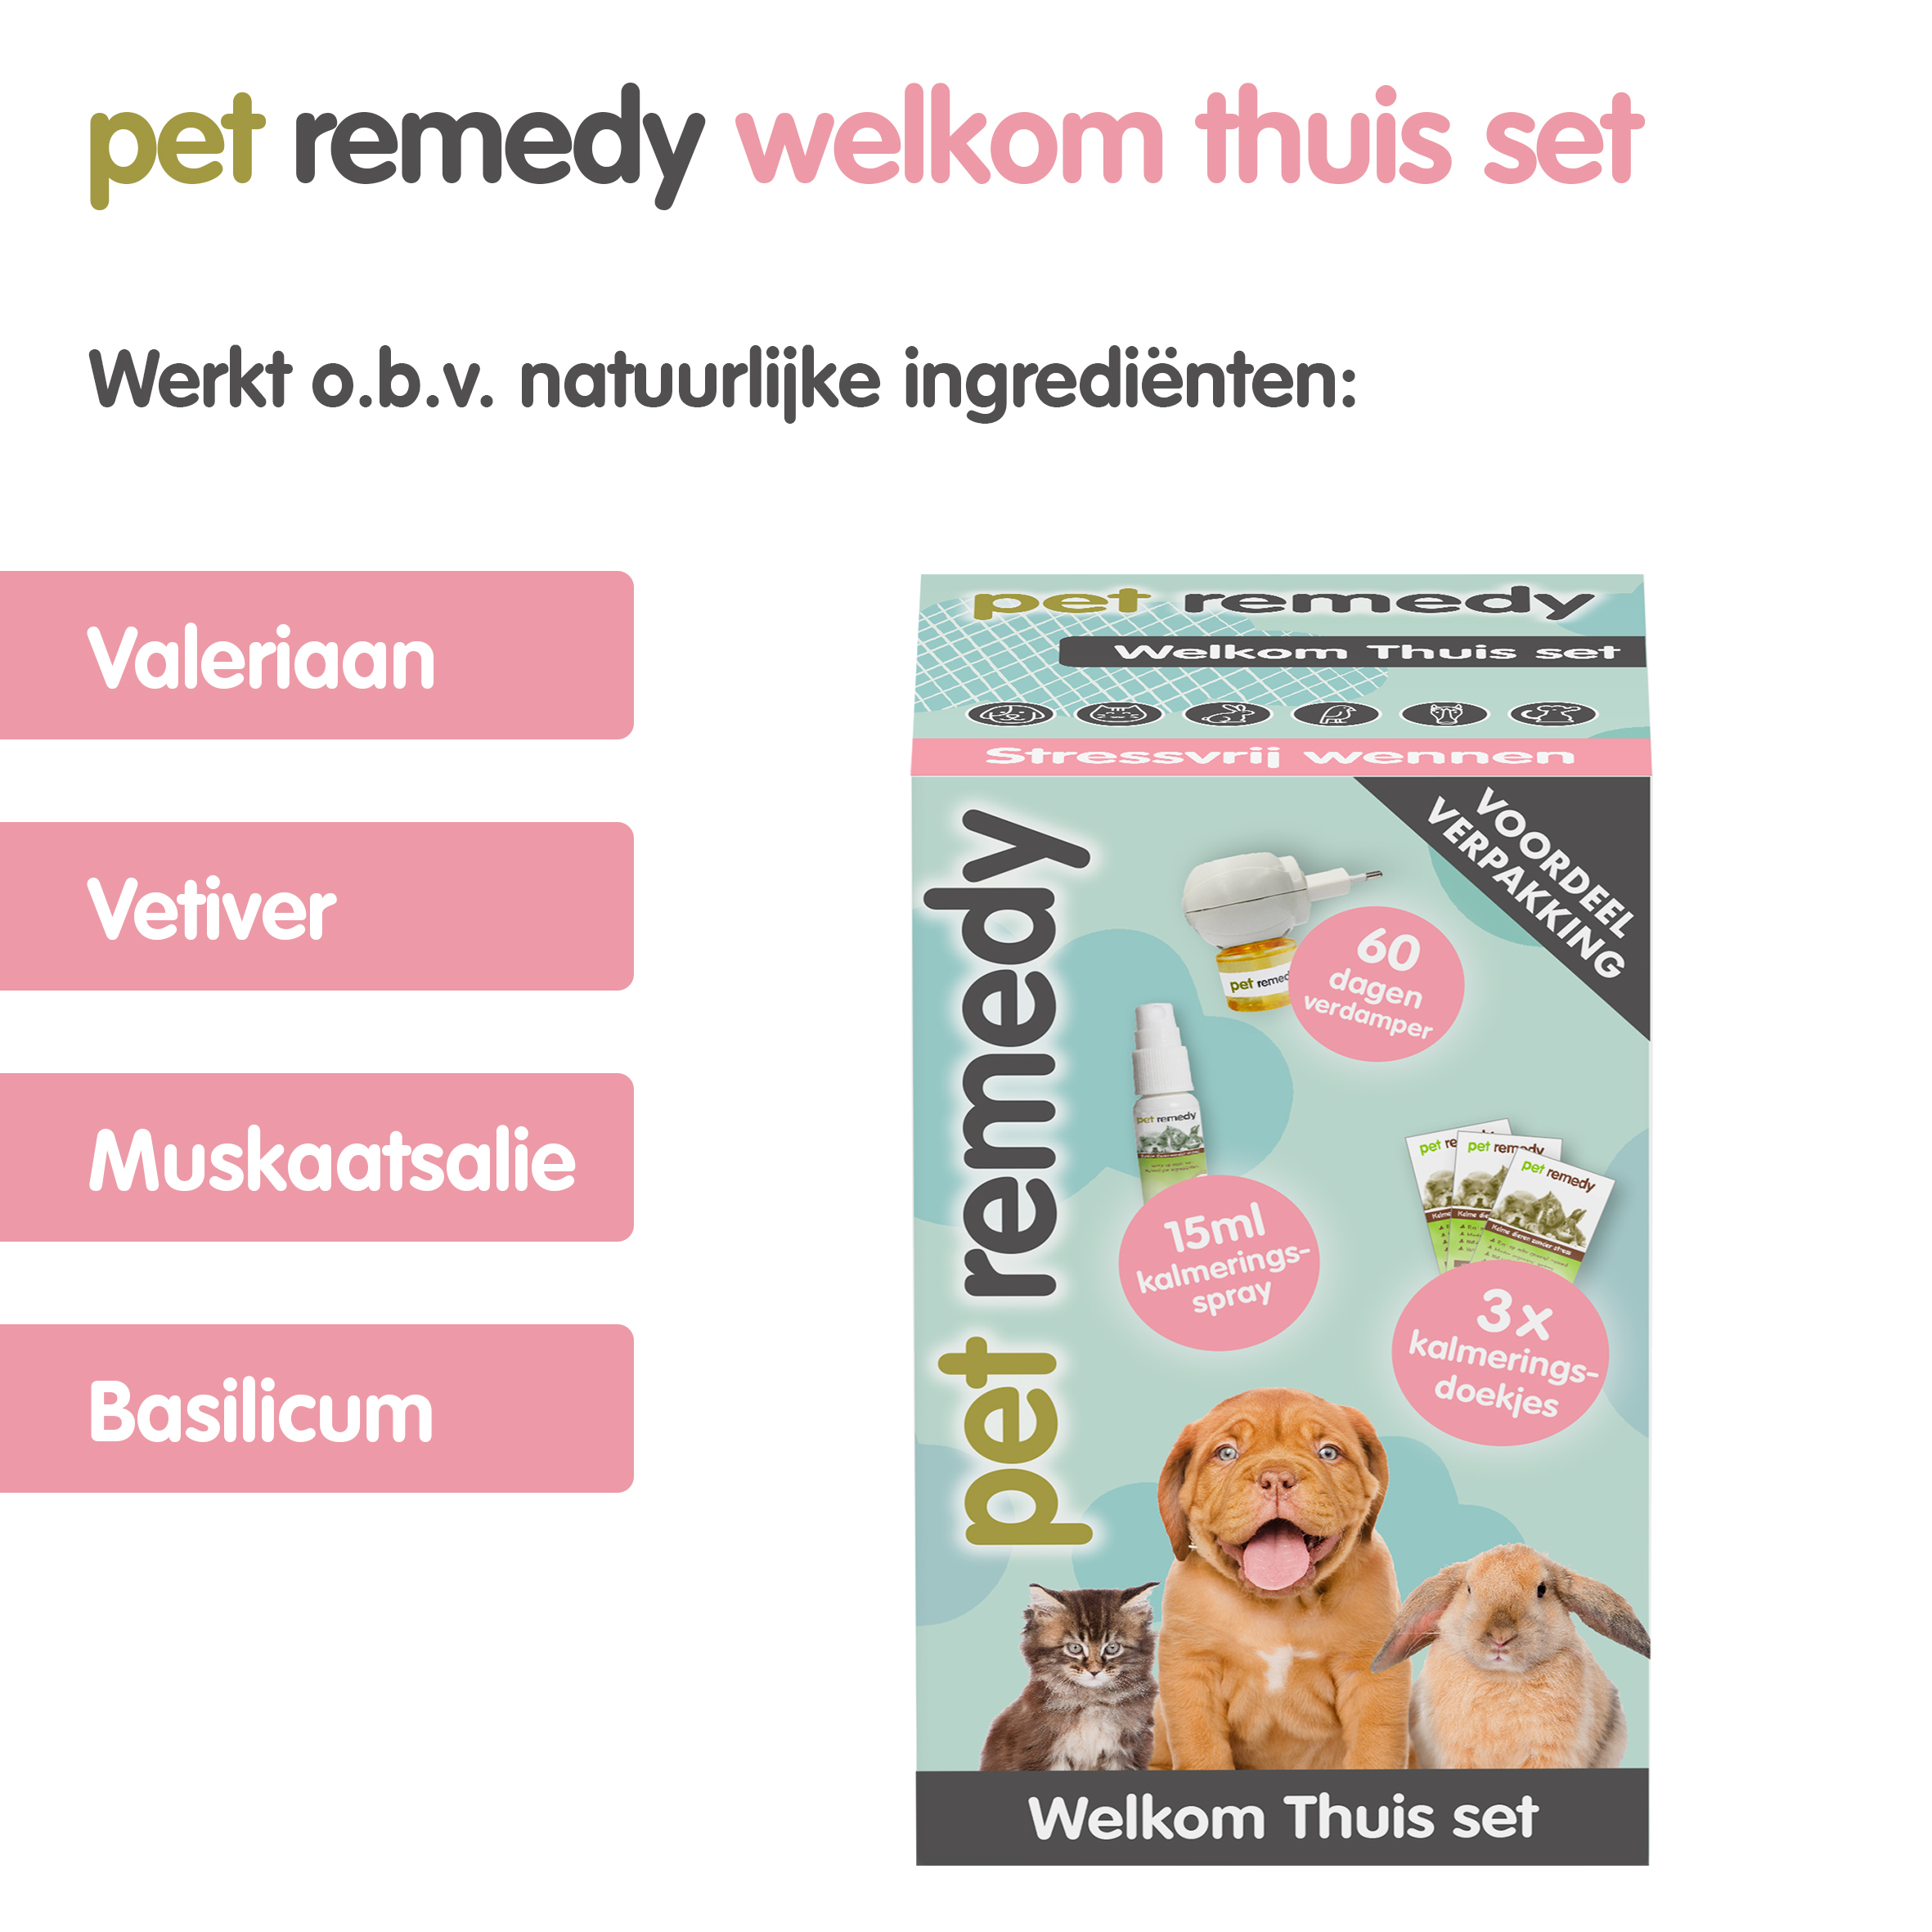 Pet Remedy Welkom Thuis Set tegen stress bij huisdieren - Emax.nl